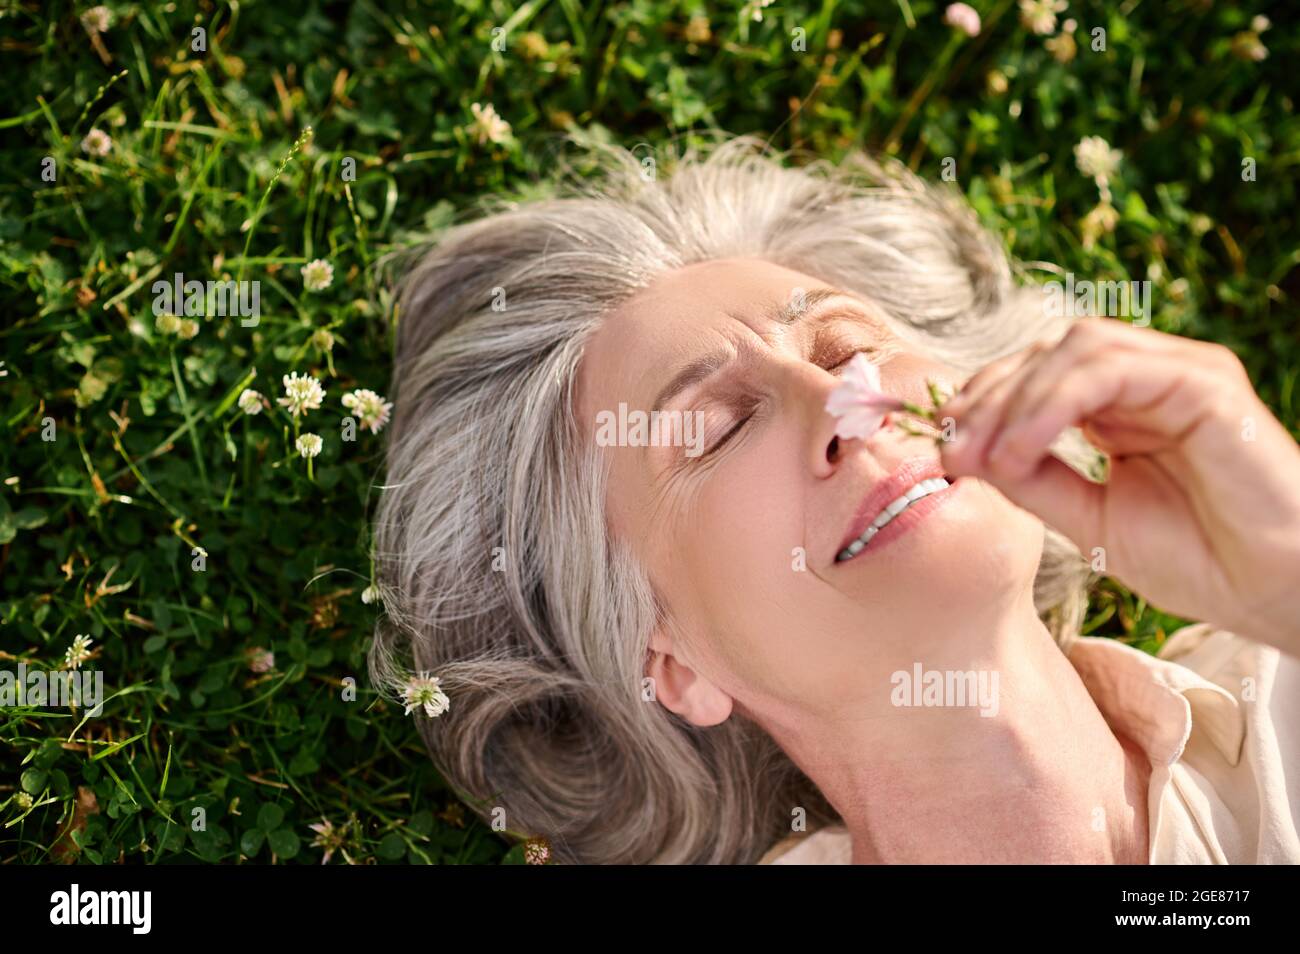 Gros plan sur le visage d'une femme allongé sur de l'herbe Banque D'Images